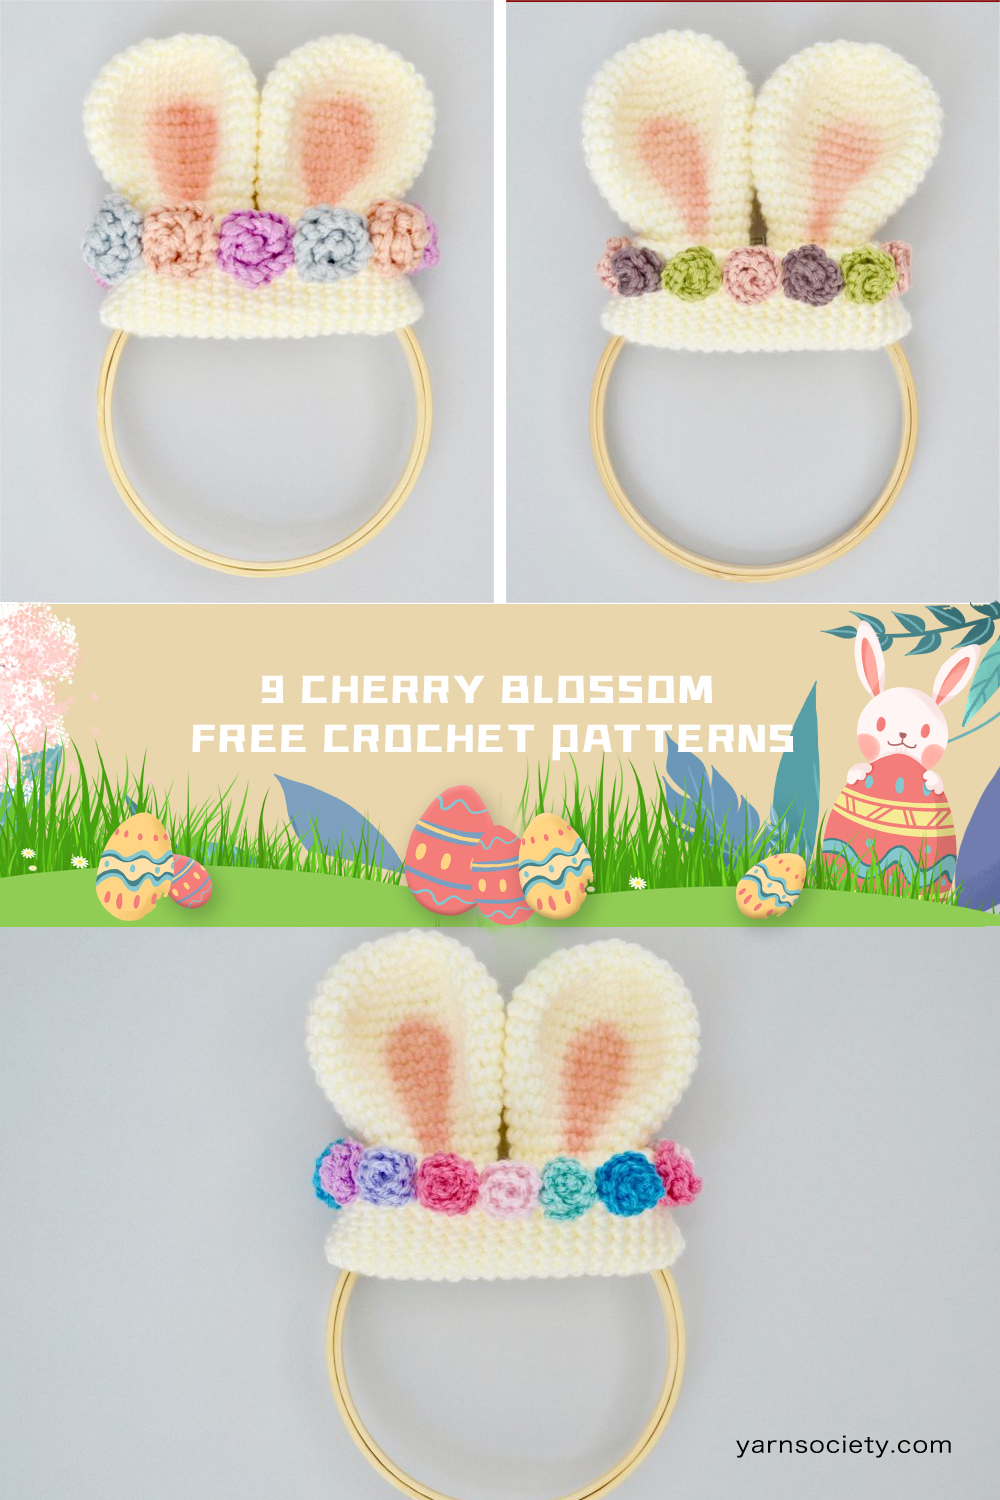 9 Easter Crochet Wreath FREE Patterns